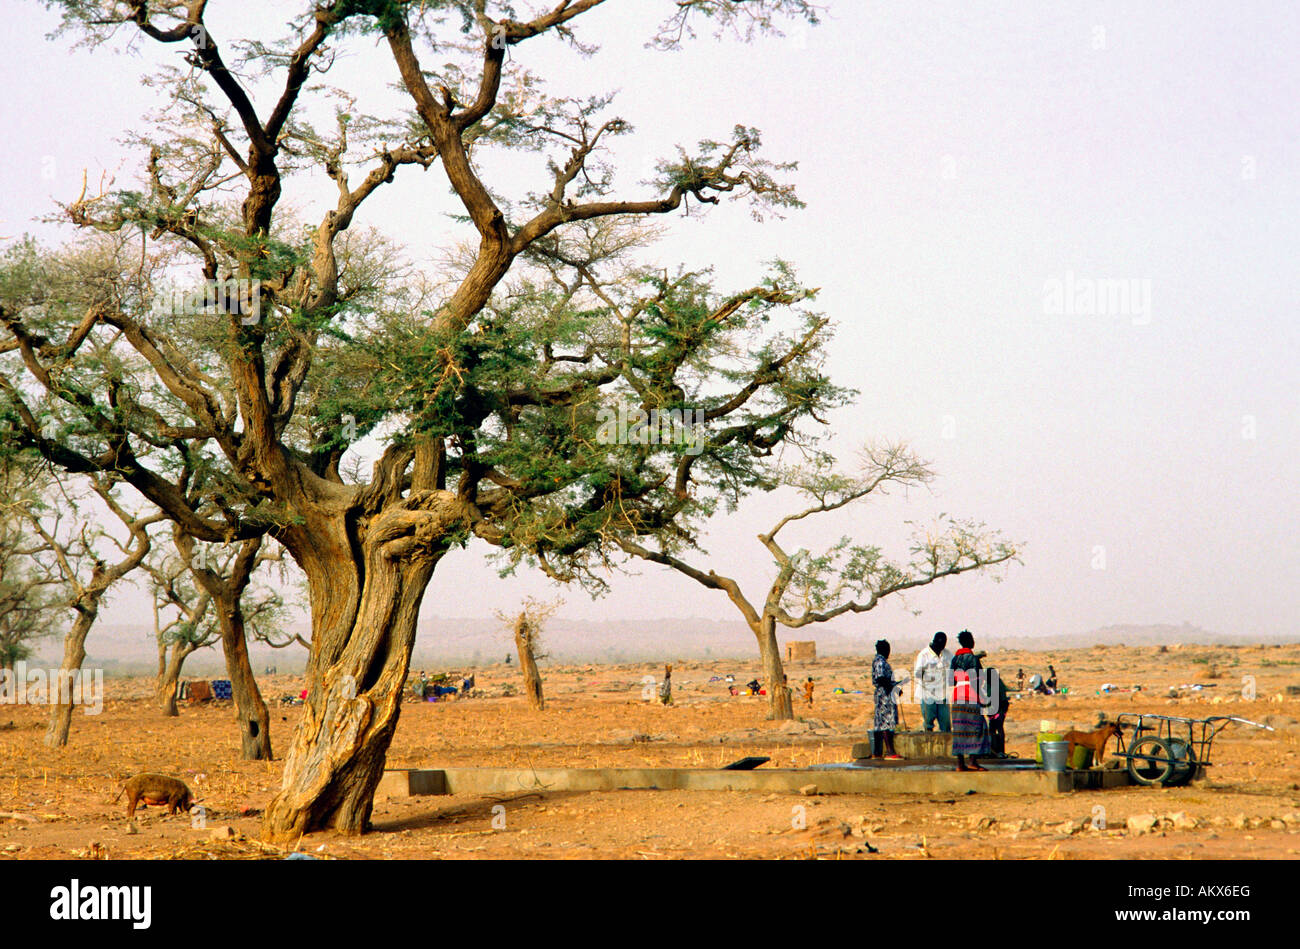 Dogones las mujeres se reúnen en un pozo en una amplia llanura seca Malí Foto de stock